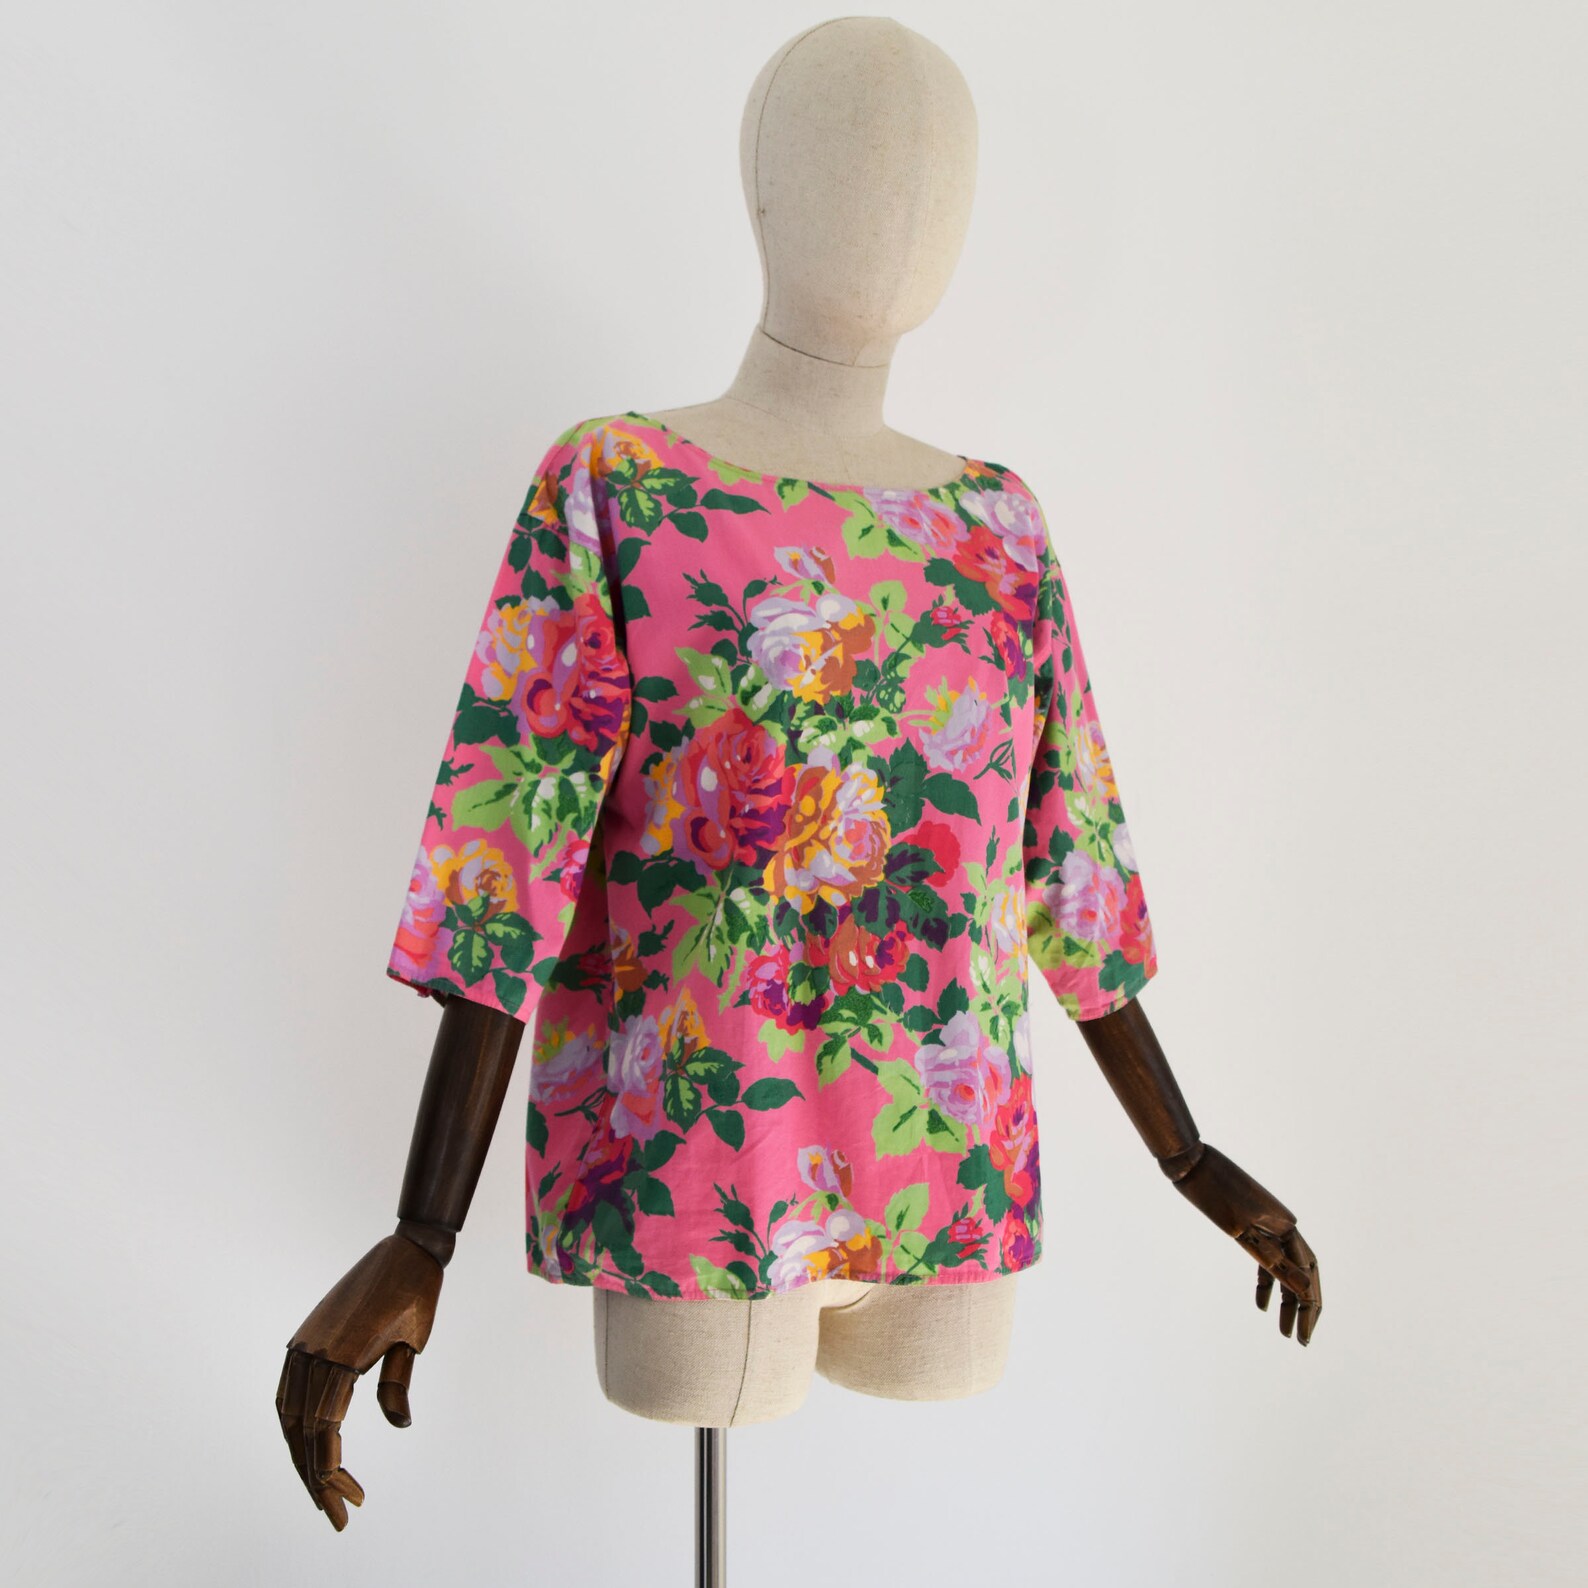 EMANUEL UNGARO blouse vintage 1990s cotton floral print | Etsy